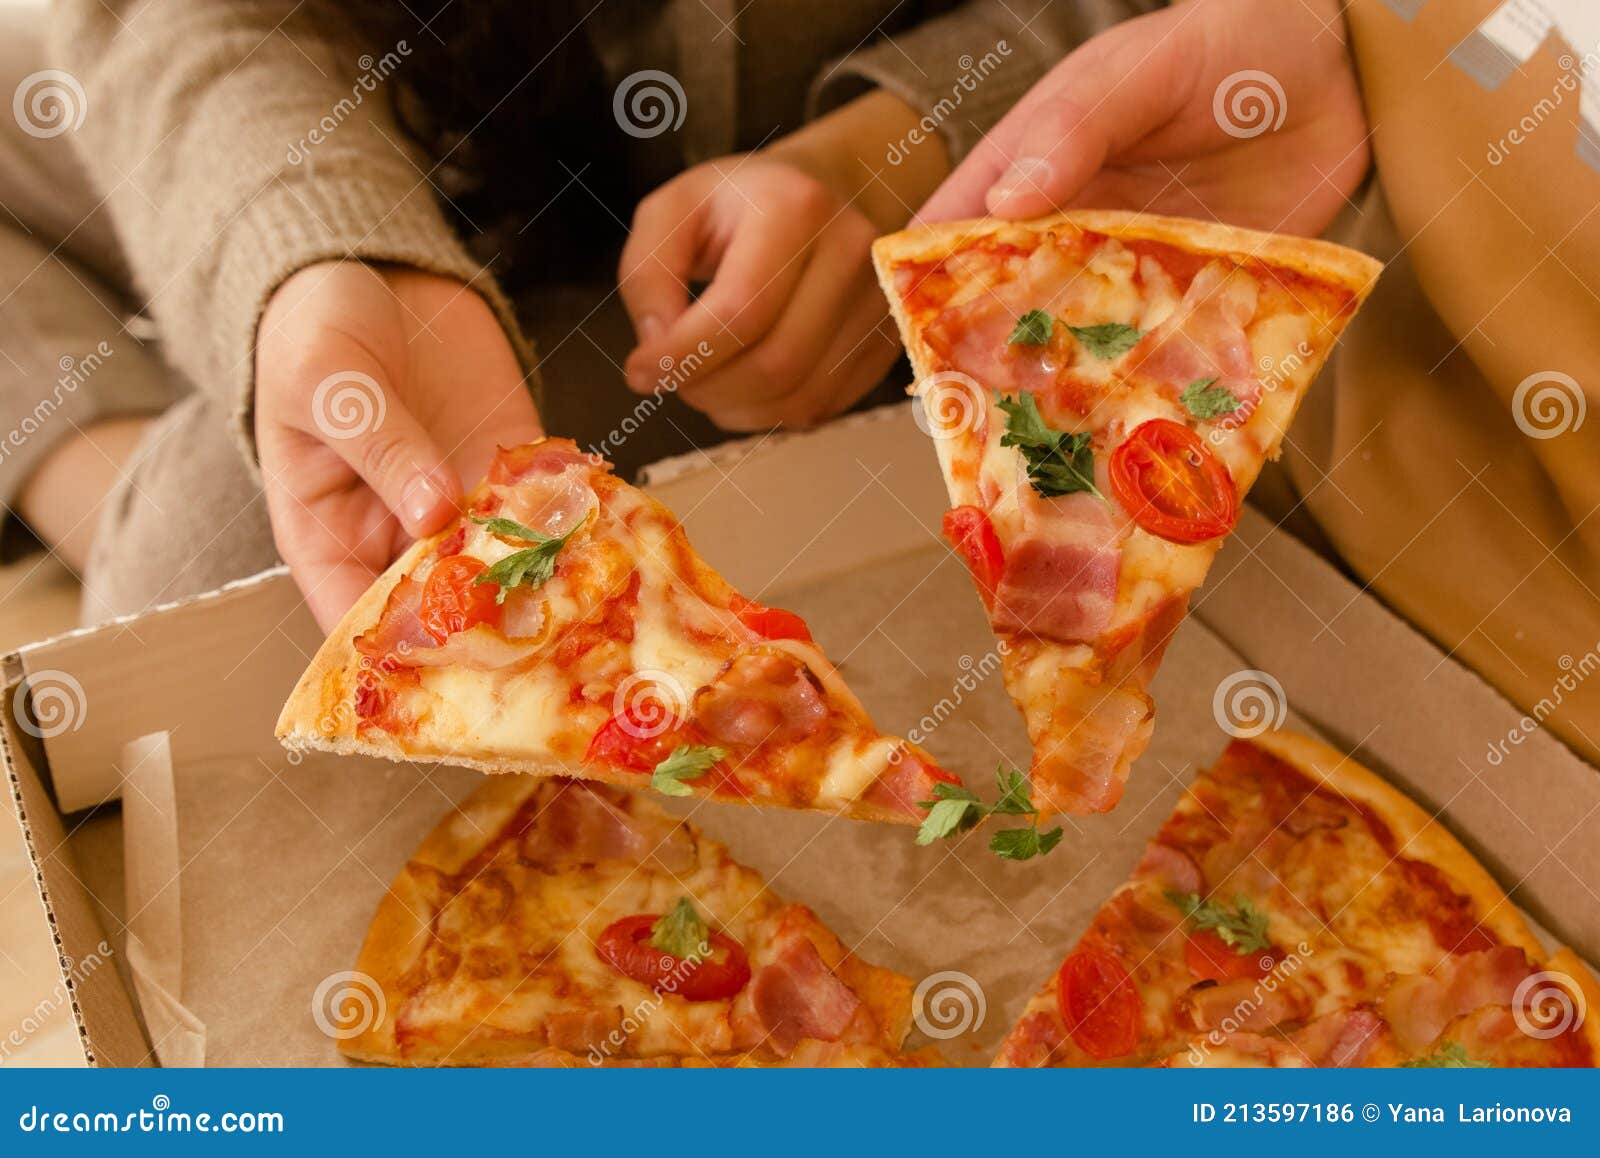 фотошоп девушка из куска пиццы фото 34